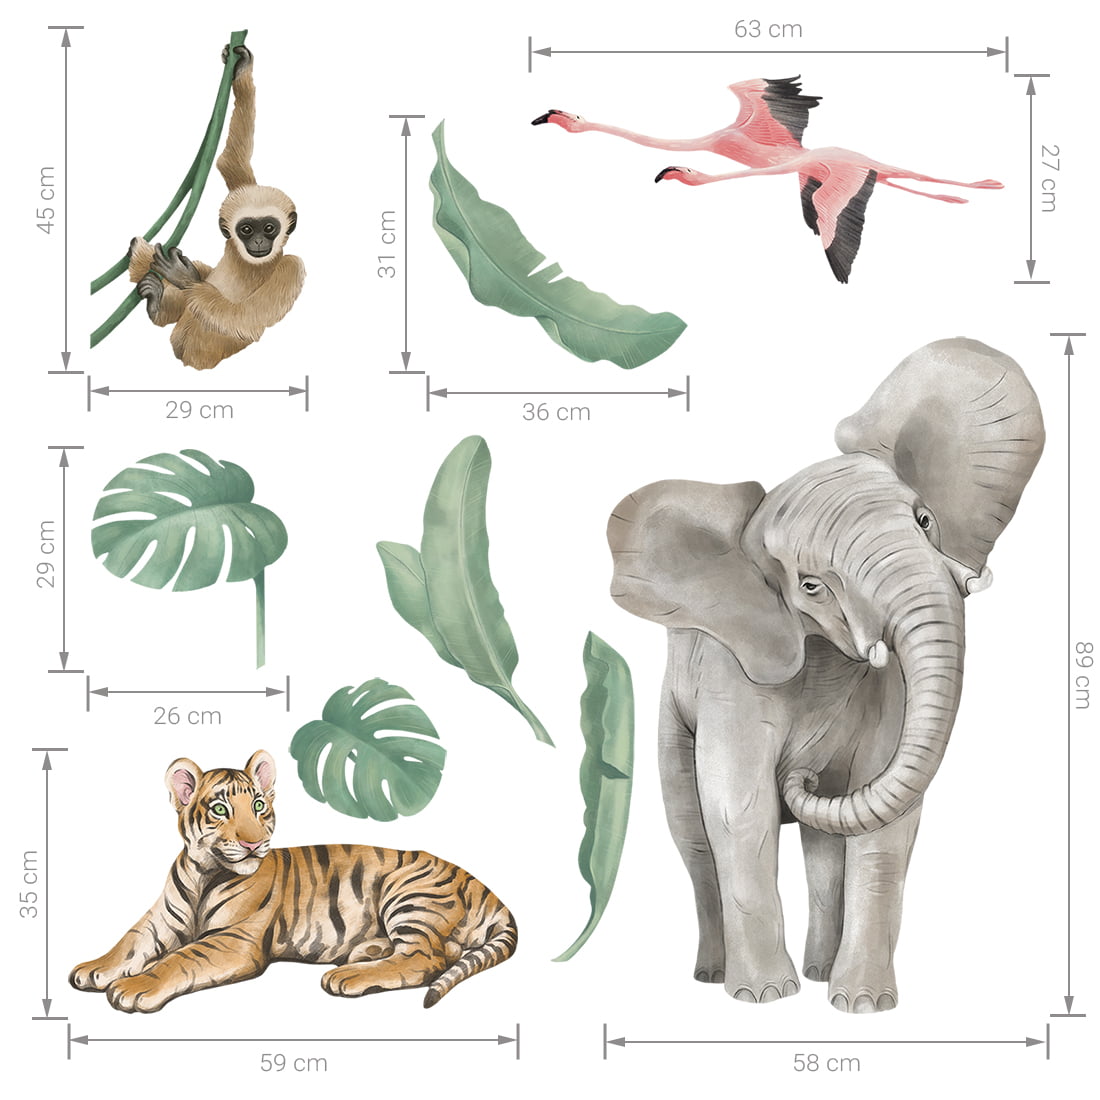 Wandaufkleber Safari mit einem Elefanten, Tiger, Flamingo, Affen und sämtlichen Pflanzen mit Grössen angezeigt